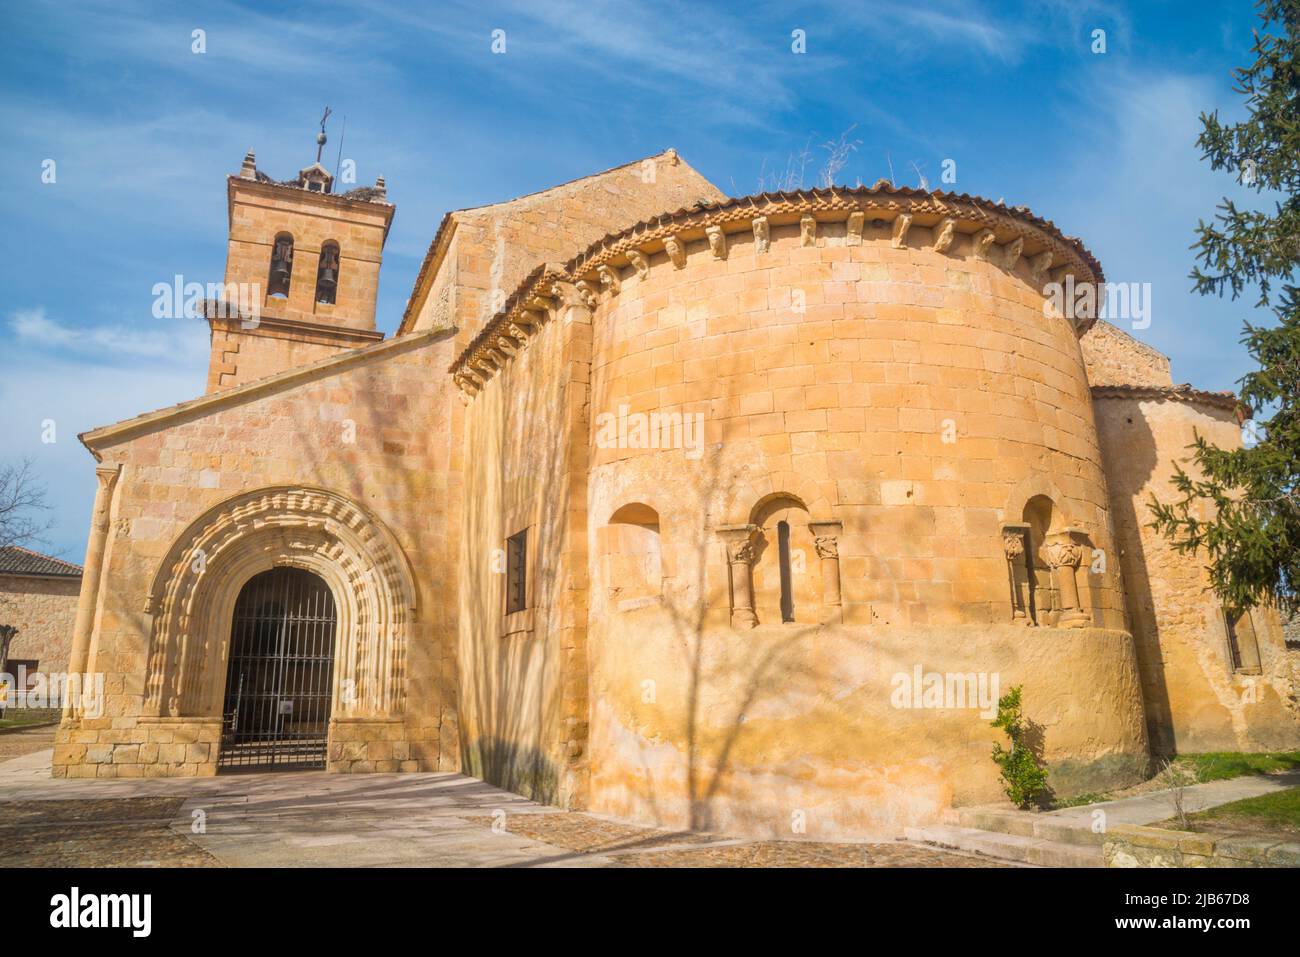 San Pedro Advincula church. Perorrubio, Segovia province, Castilla Leon, Spain. Stock Photo